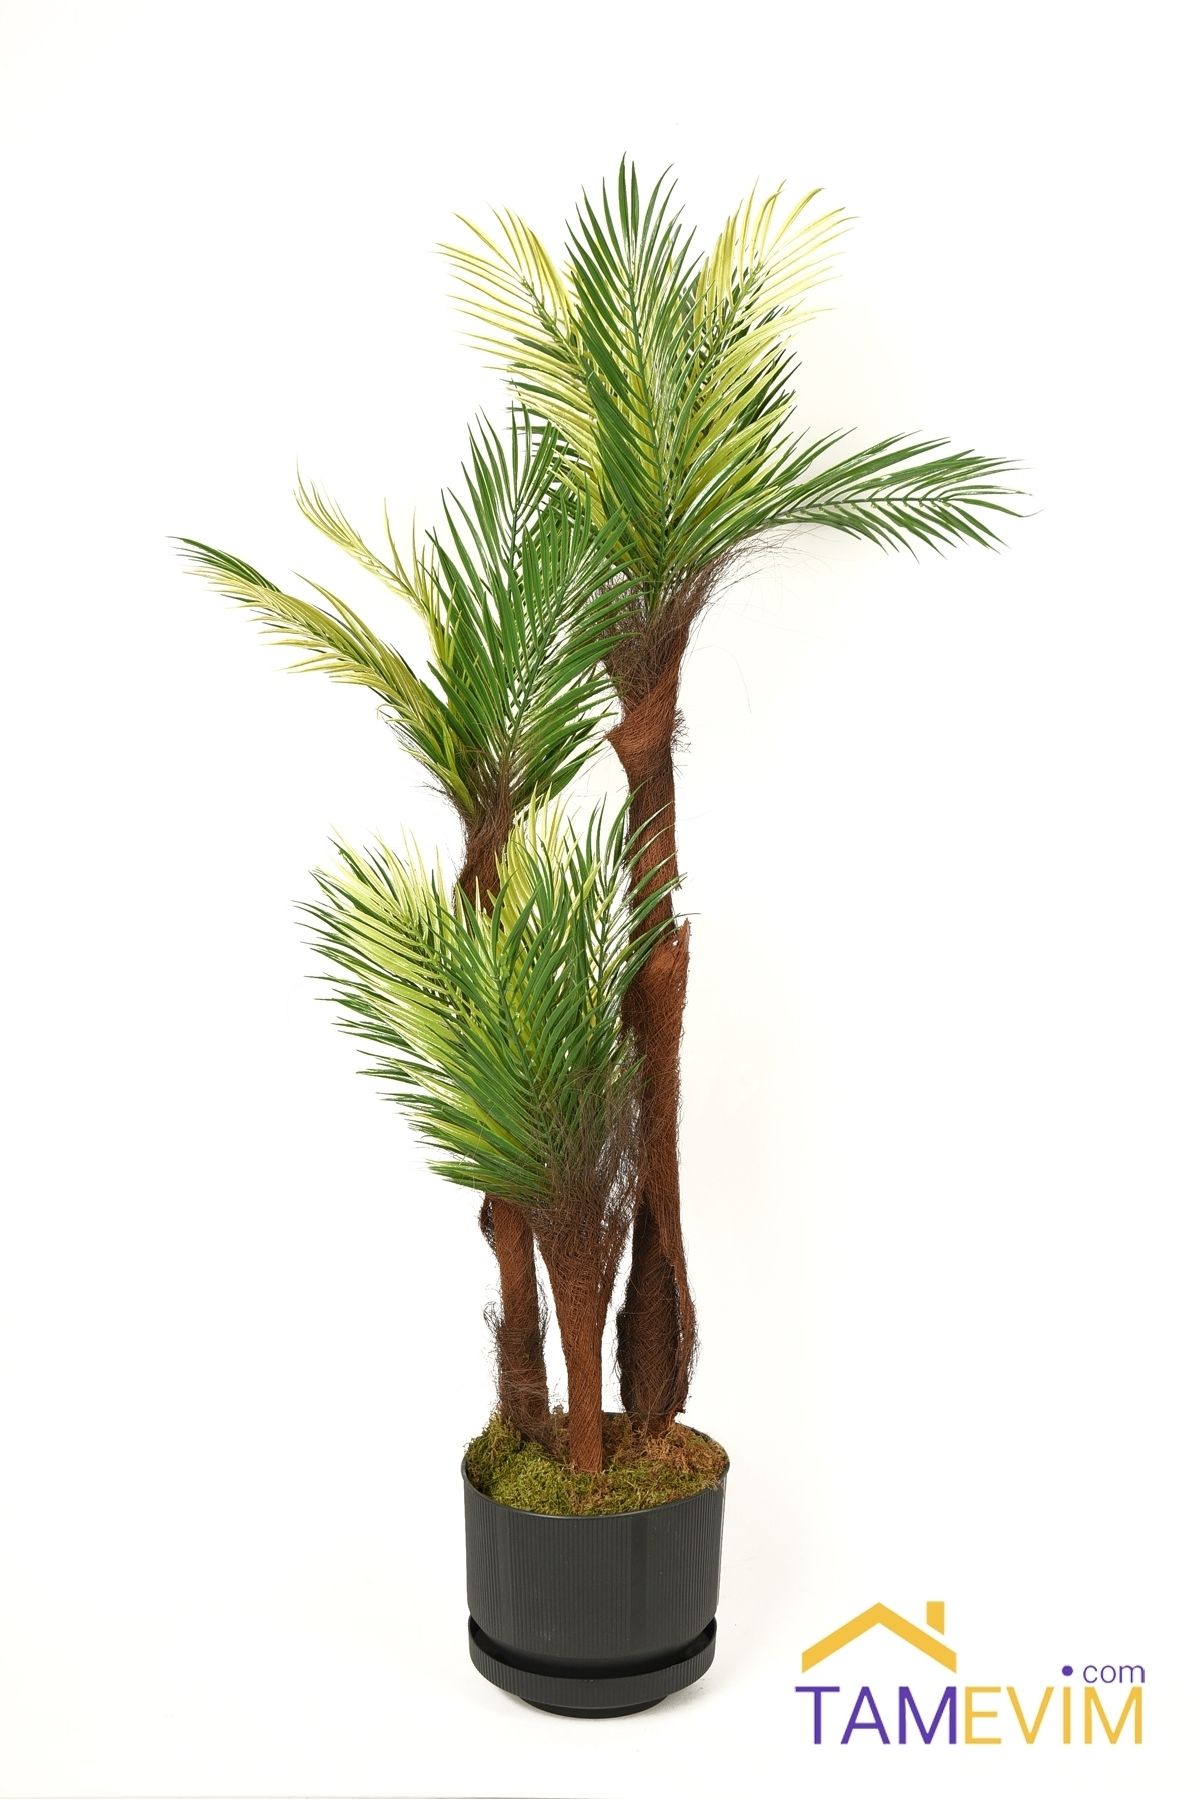 TamEvim Yapay Ağaç Palmiye 3 Katlı 18 Yaprak 110cm